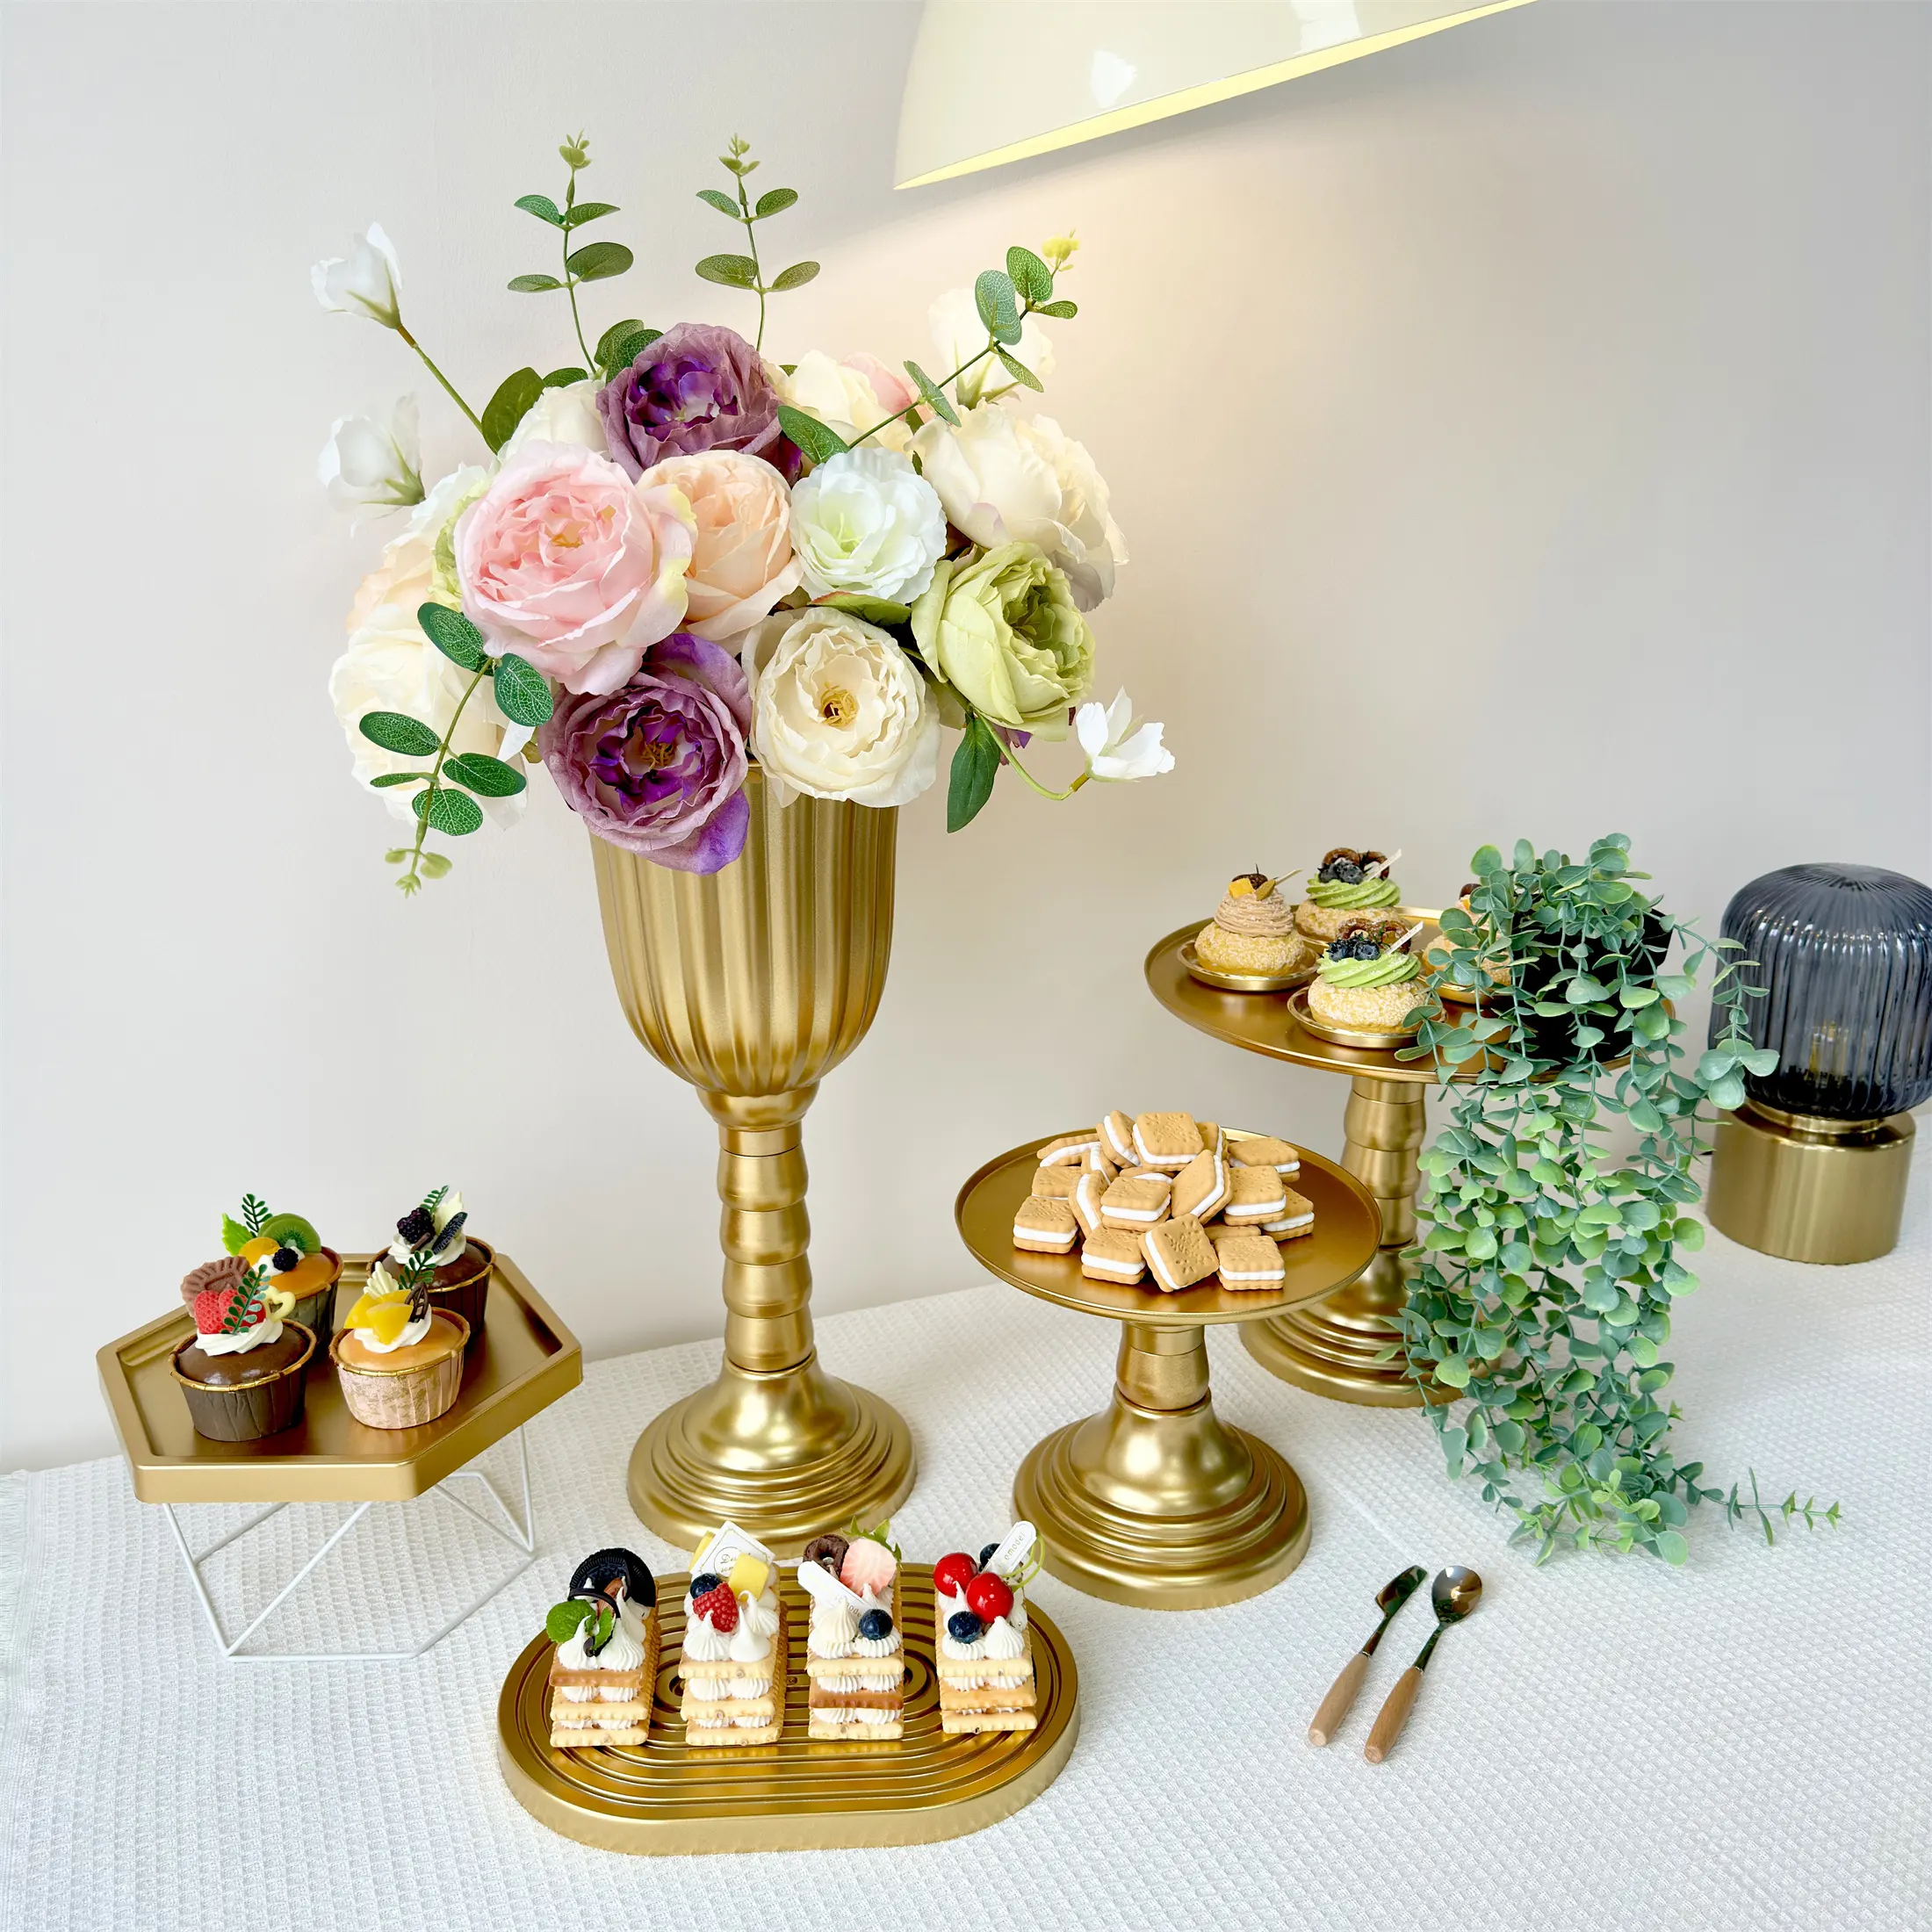 Düğün süslemeleri parti doğum günü için Centerpieces silindir vazolar için dayanıklı plastik çiçek vazo kaide